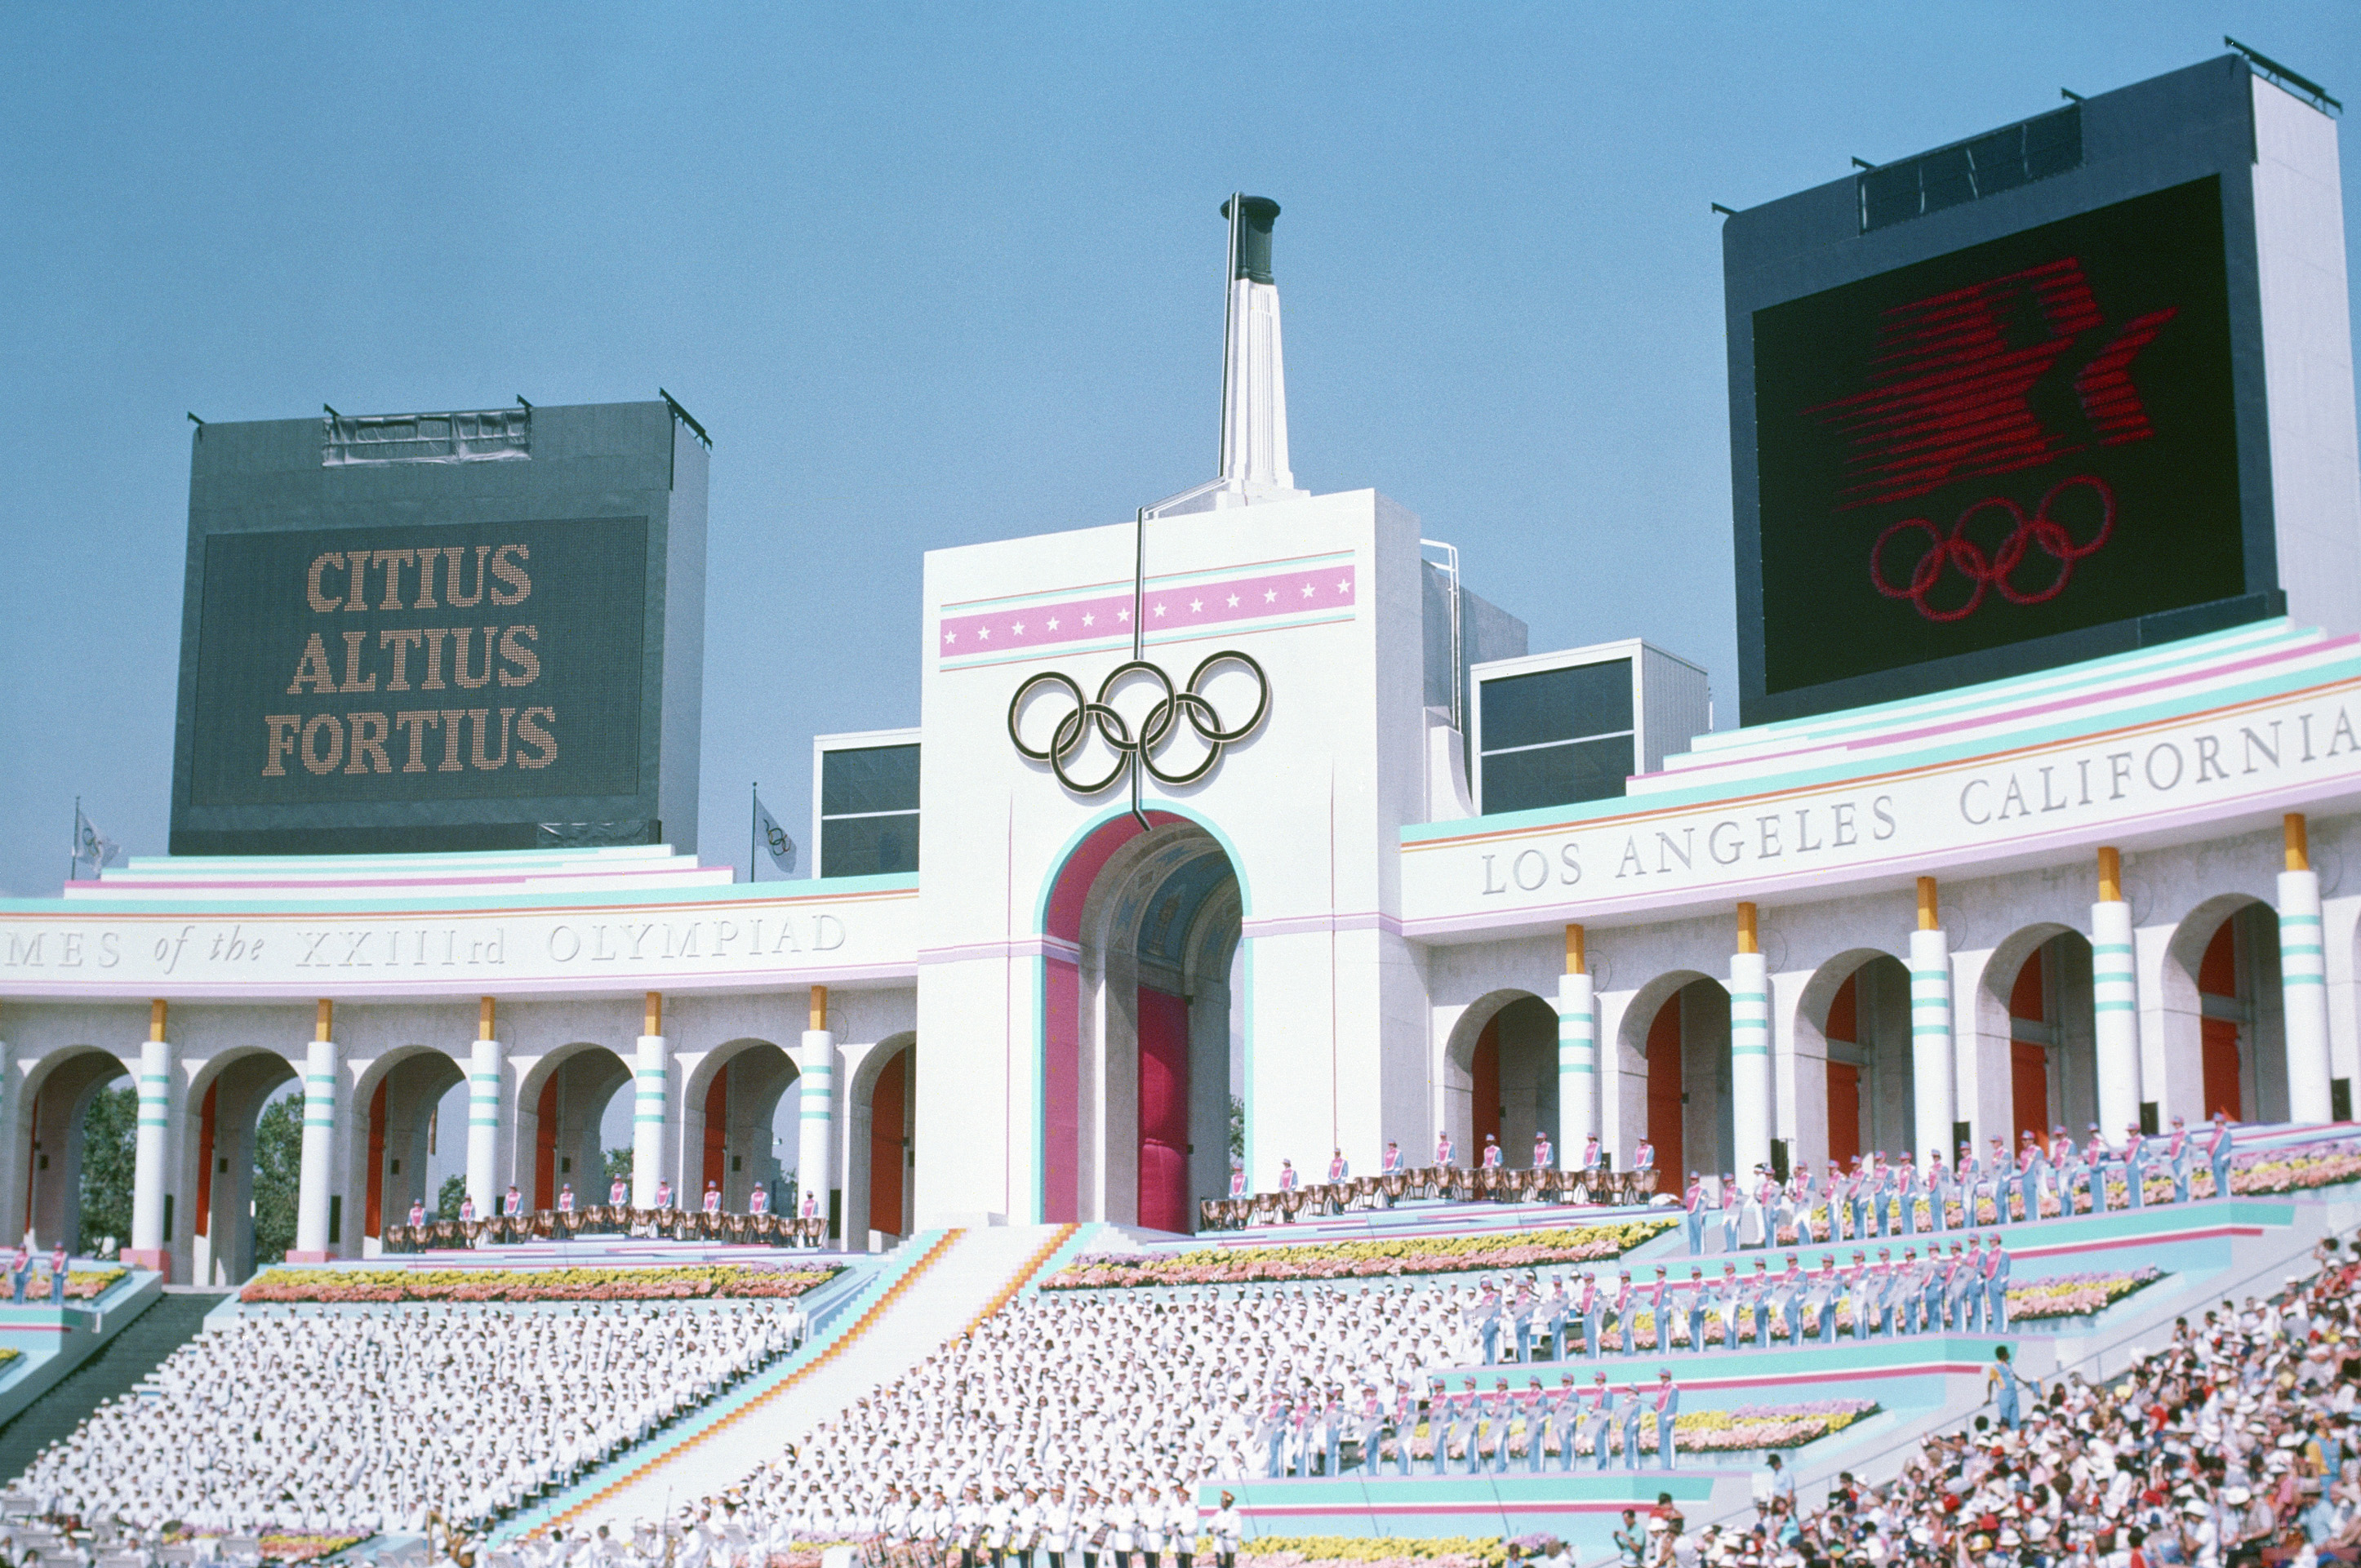 洛杉矶大剧场的奥林匹克火炬塔照片